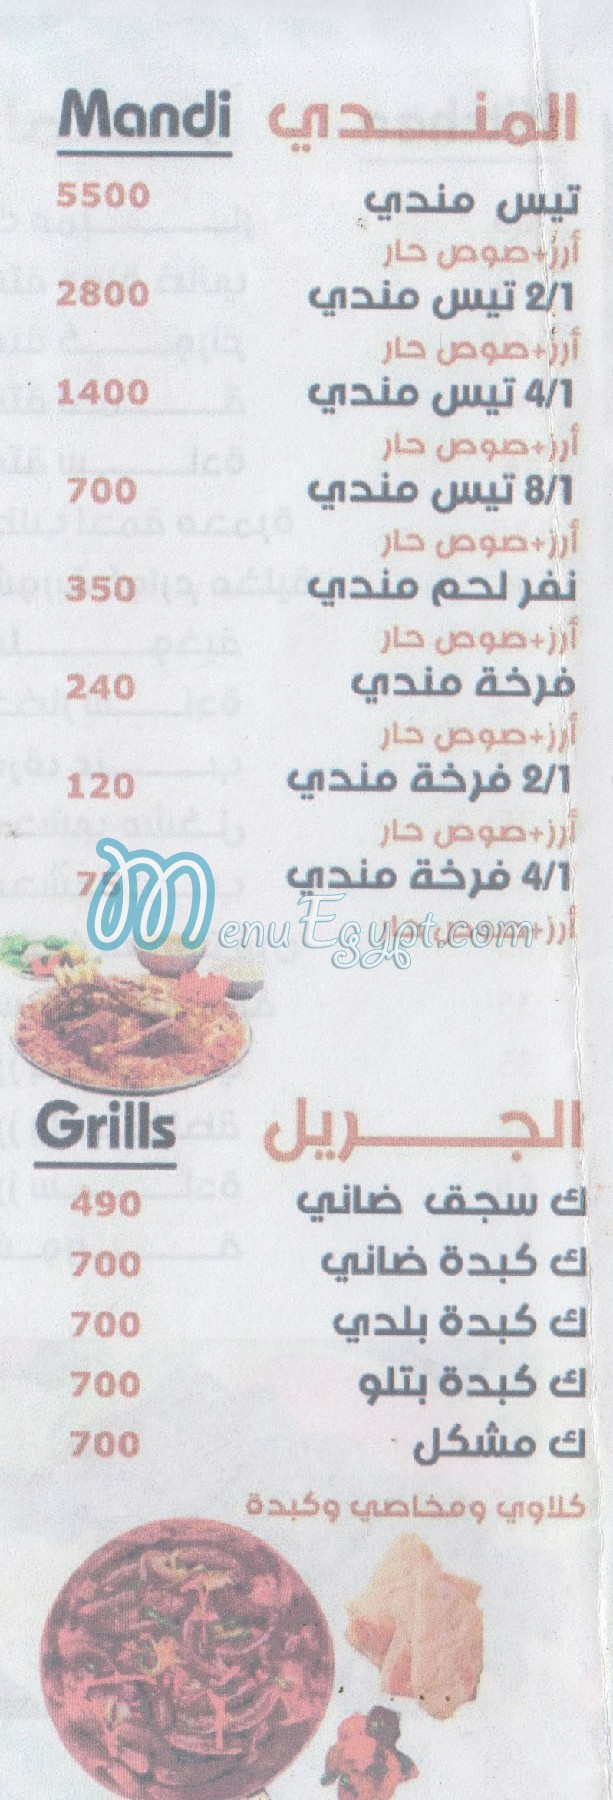 El Hafy menu